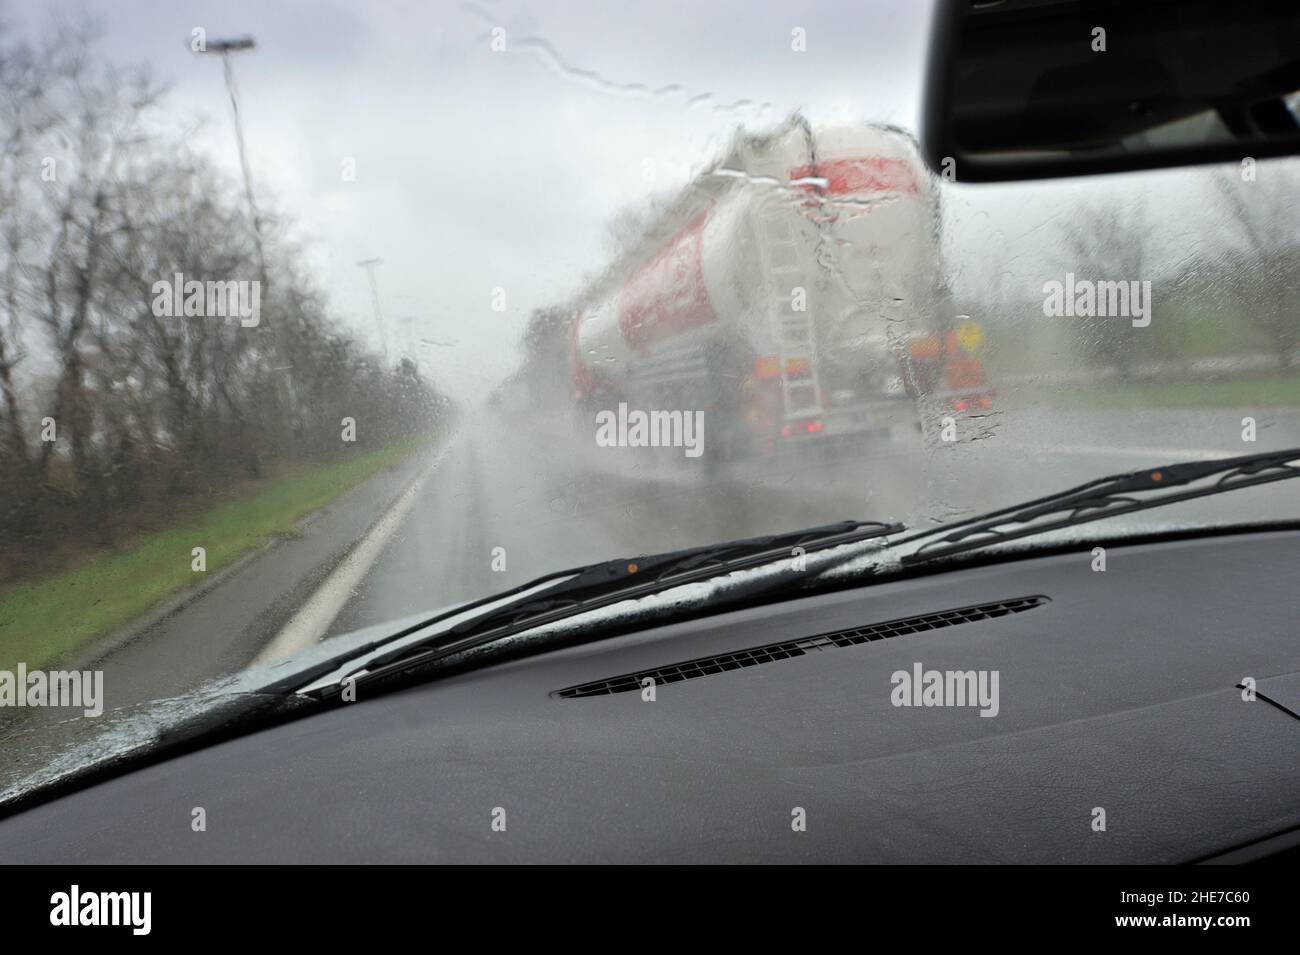 LKW wird auf der Autobahn überholt, regnerisches Wetter, schlechte Sicht | camion di fronte all'autostrada, pioggia, scarsa visibilità, miserabile si Foto Stock